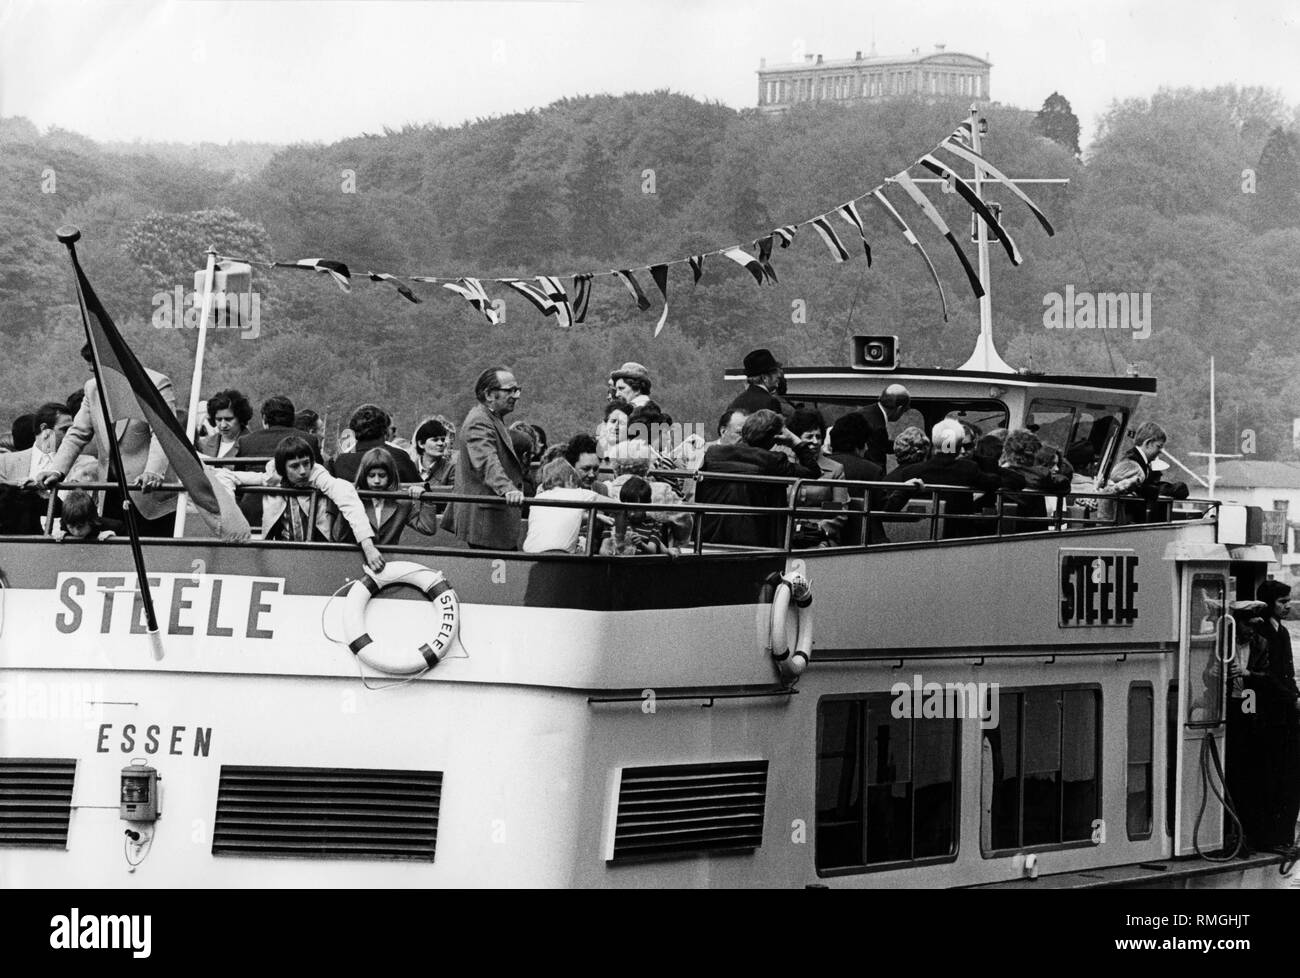 Szene einer Bootsfahrt mit der Steele auf dem Baldeneysee mit Blick auf die Villa Hügel in Essen im Mai 1975. Stockfoto